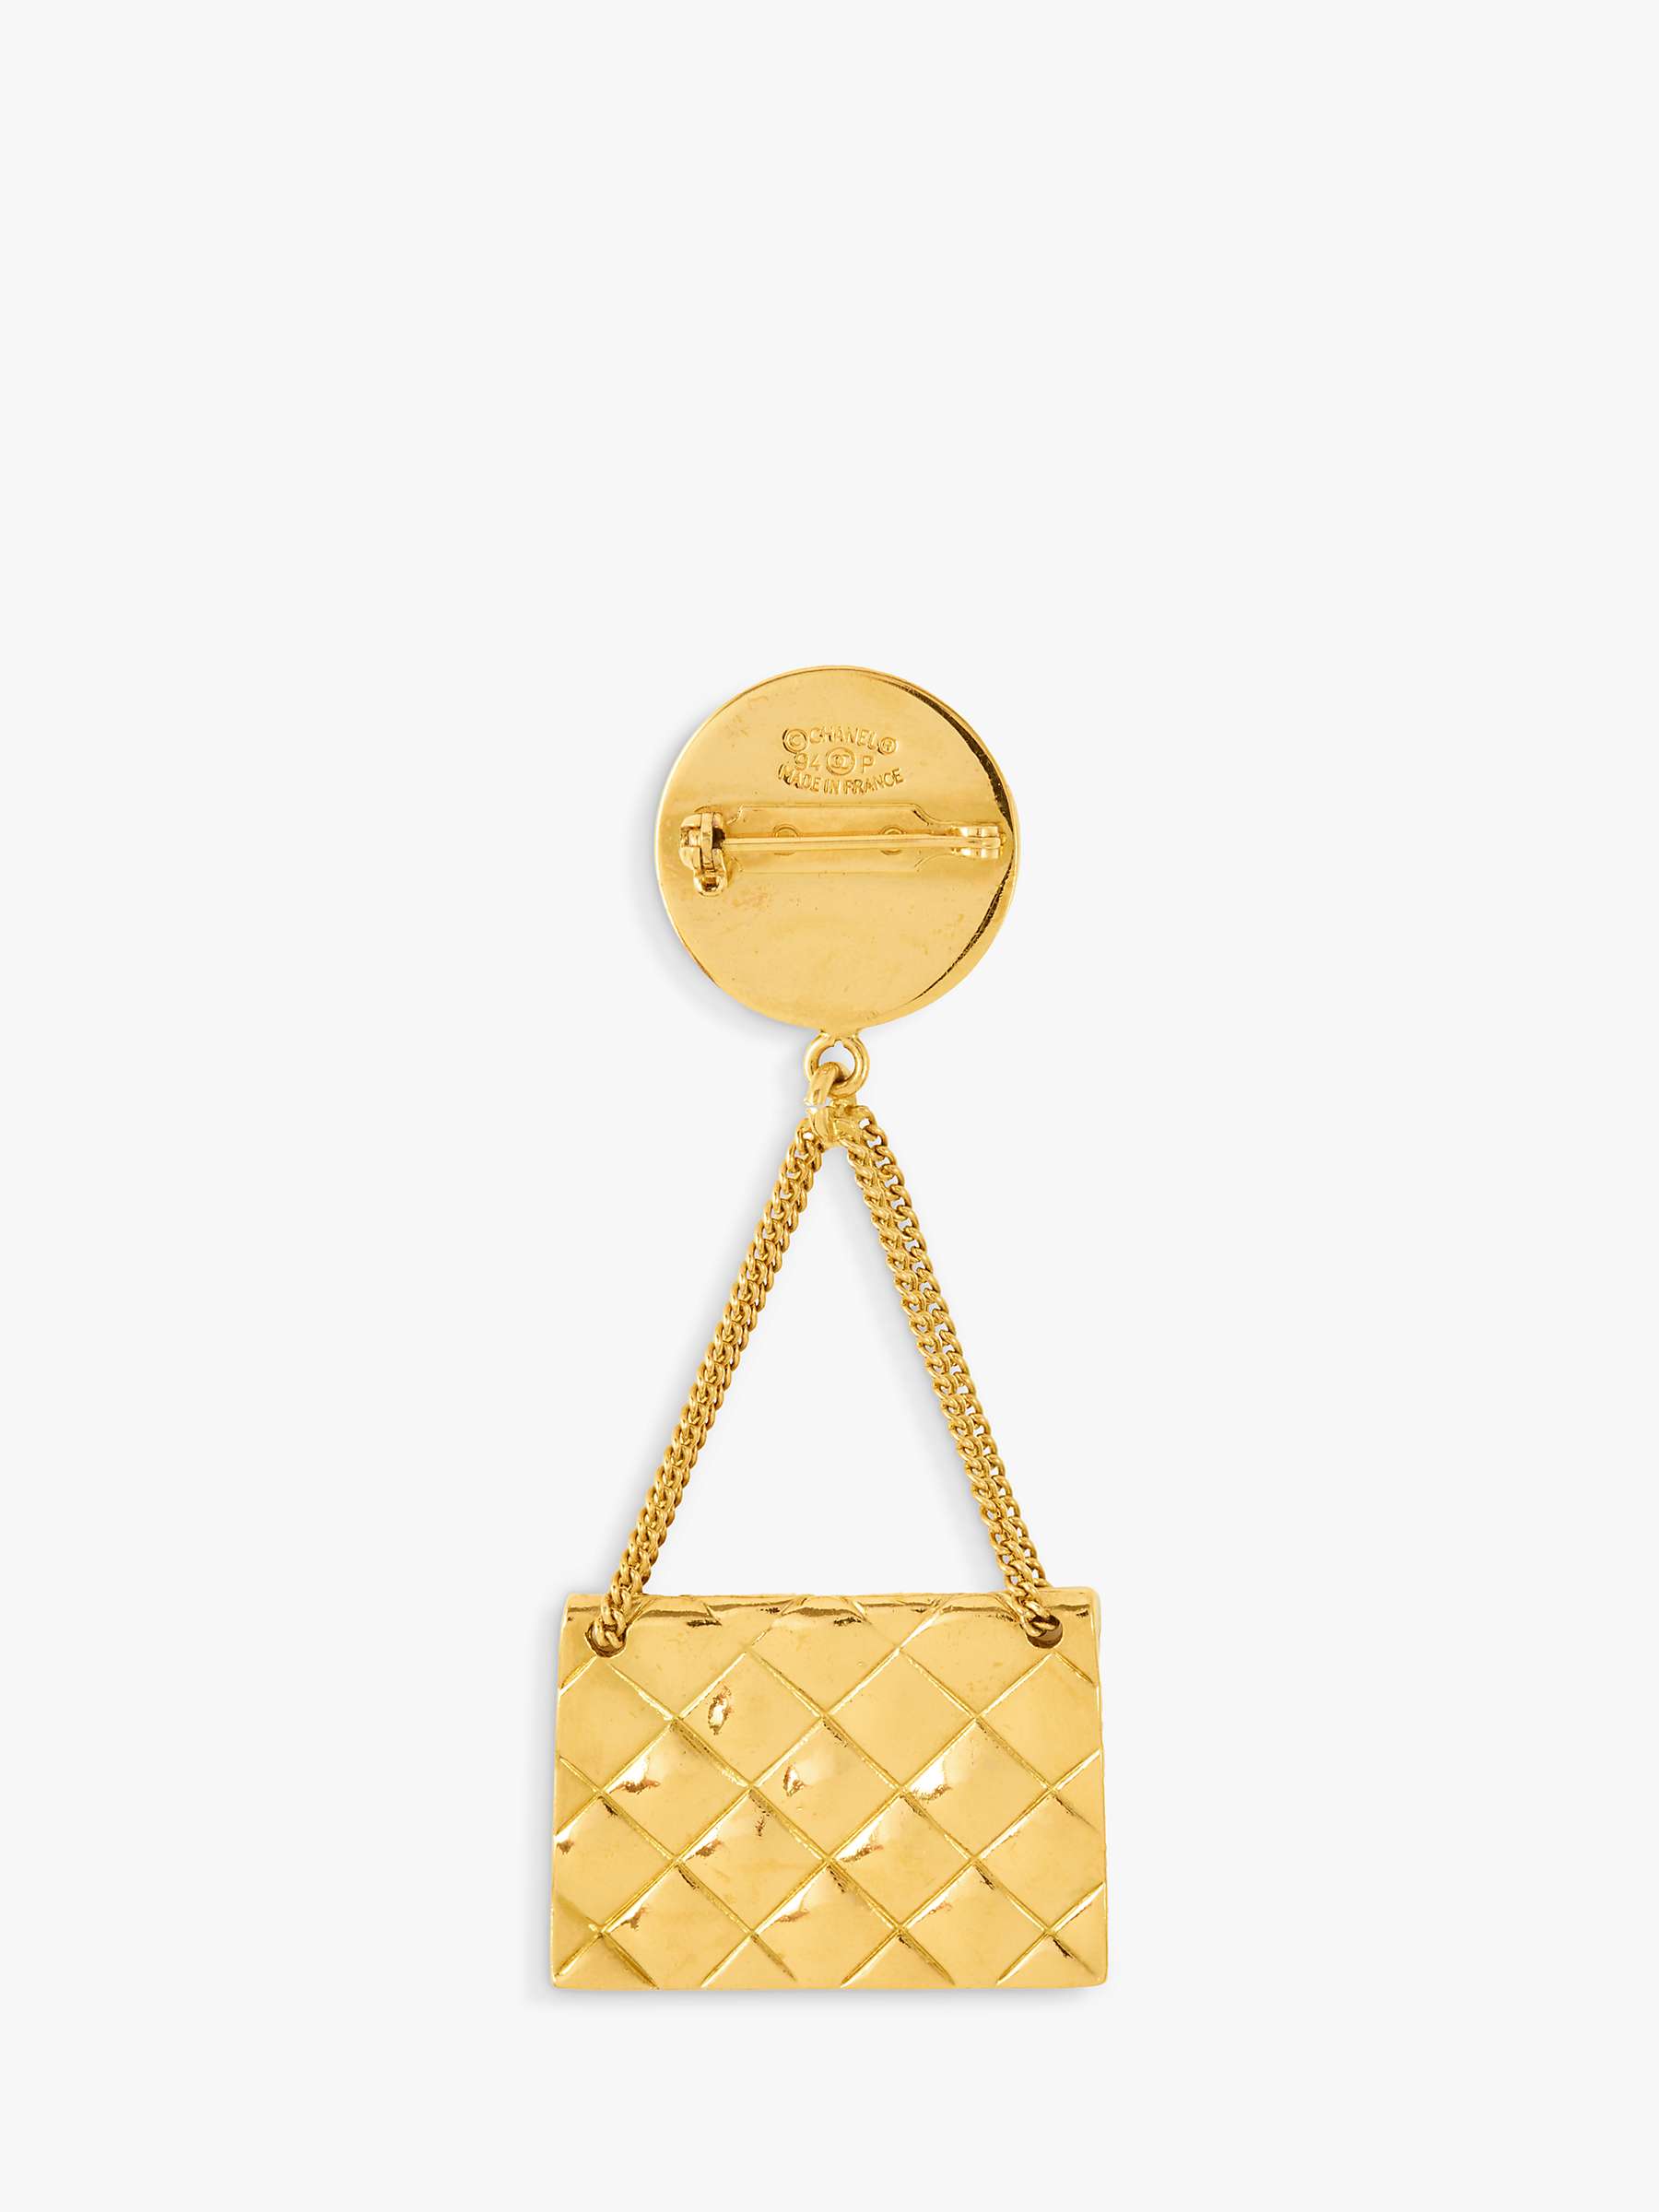 Buy Susan Caplan Vintage Chanel Handbag Medallion Brooch, Dated 1994 Online at johnlewis.com